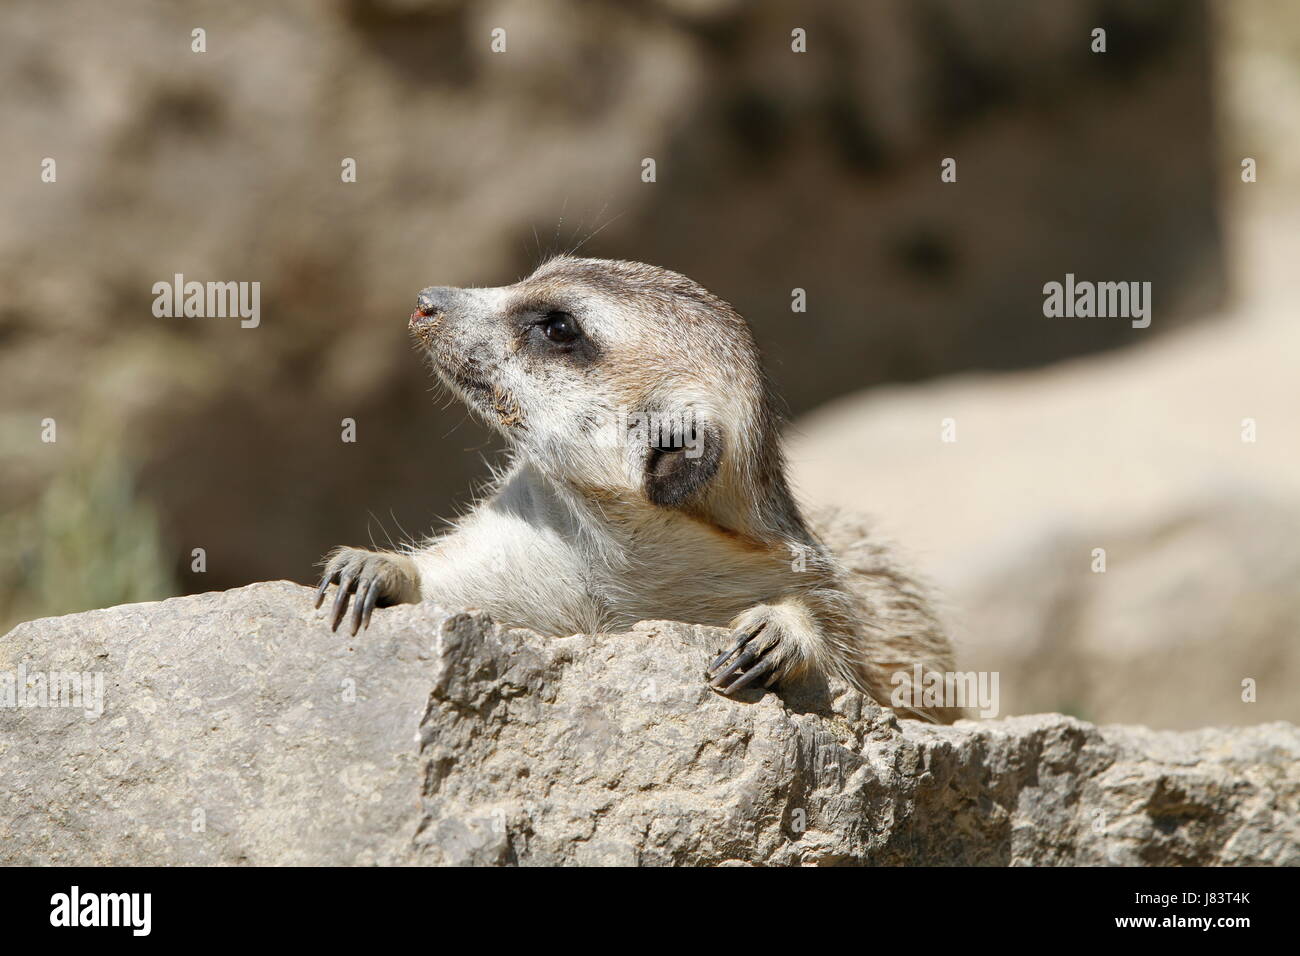 meerkats in close Stock Photo